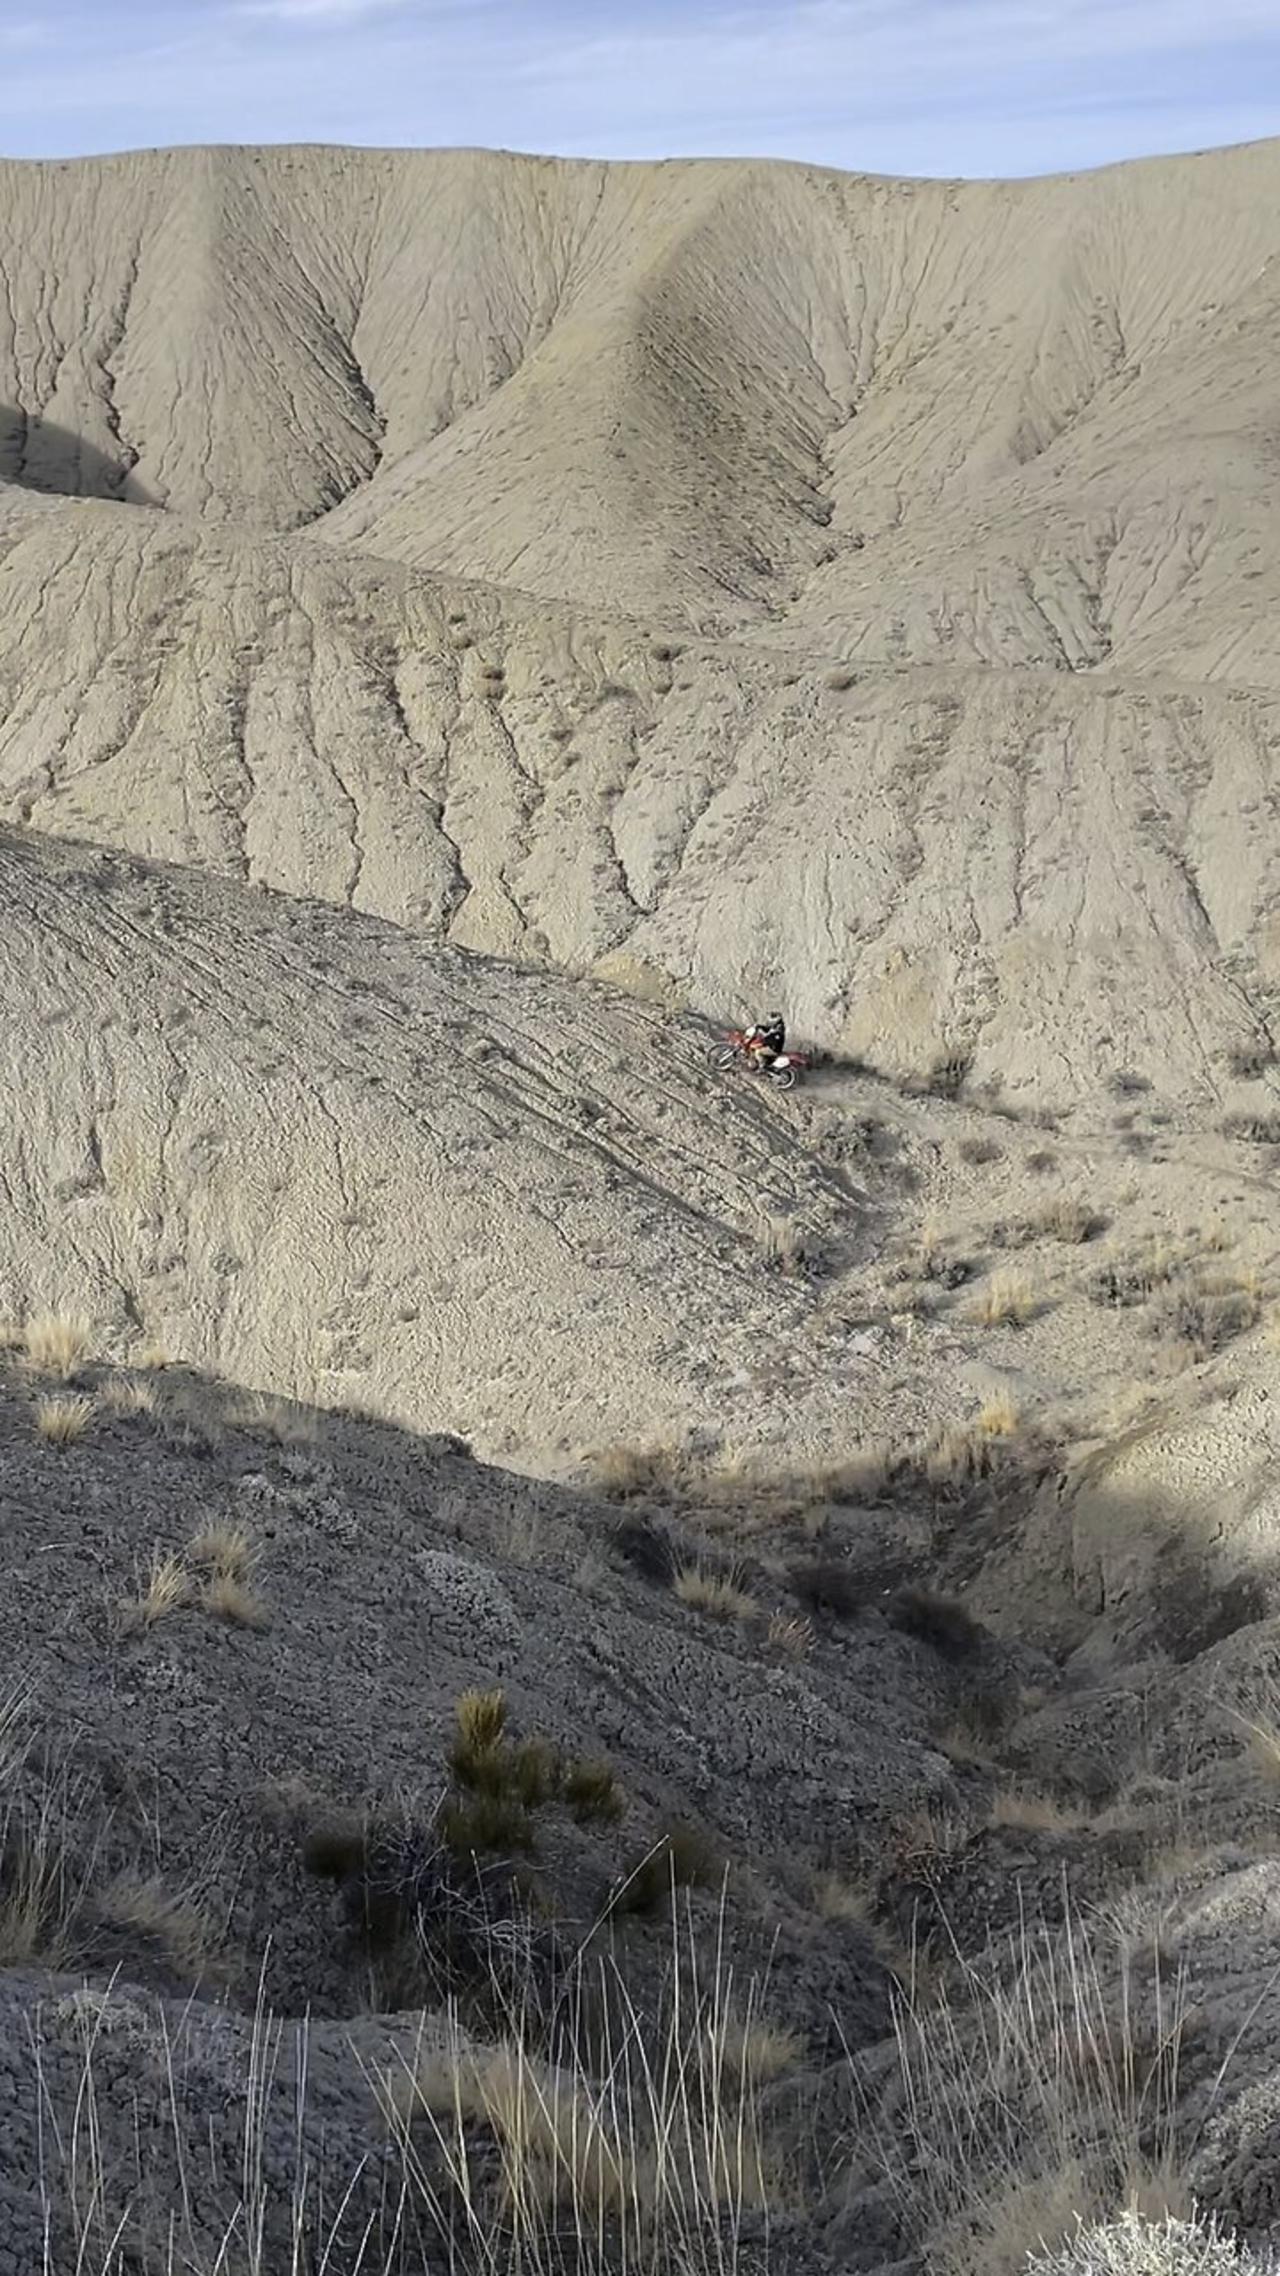 XR400 Hillclimbing a Skinny Ridge